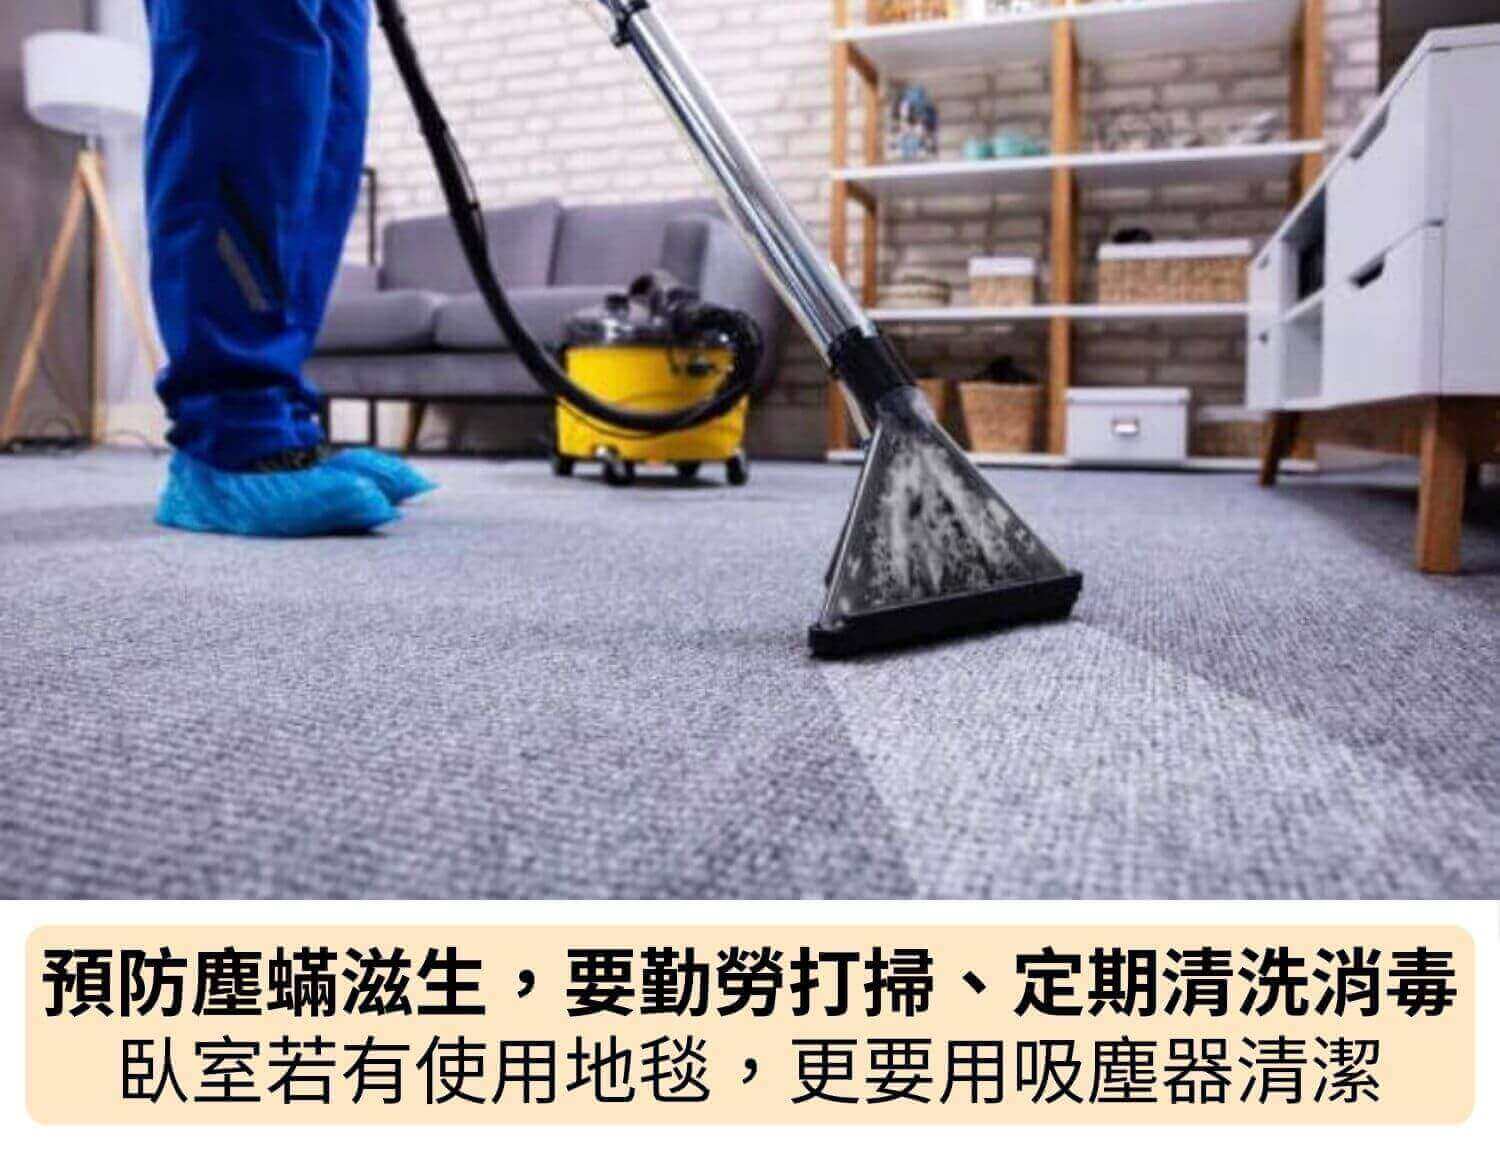 預防塵蟎滋生，要勤勞打掃、定期清洗消毒，臥室若有使用地毯，更要用吸塵器清潔